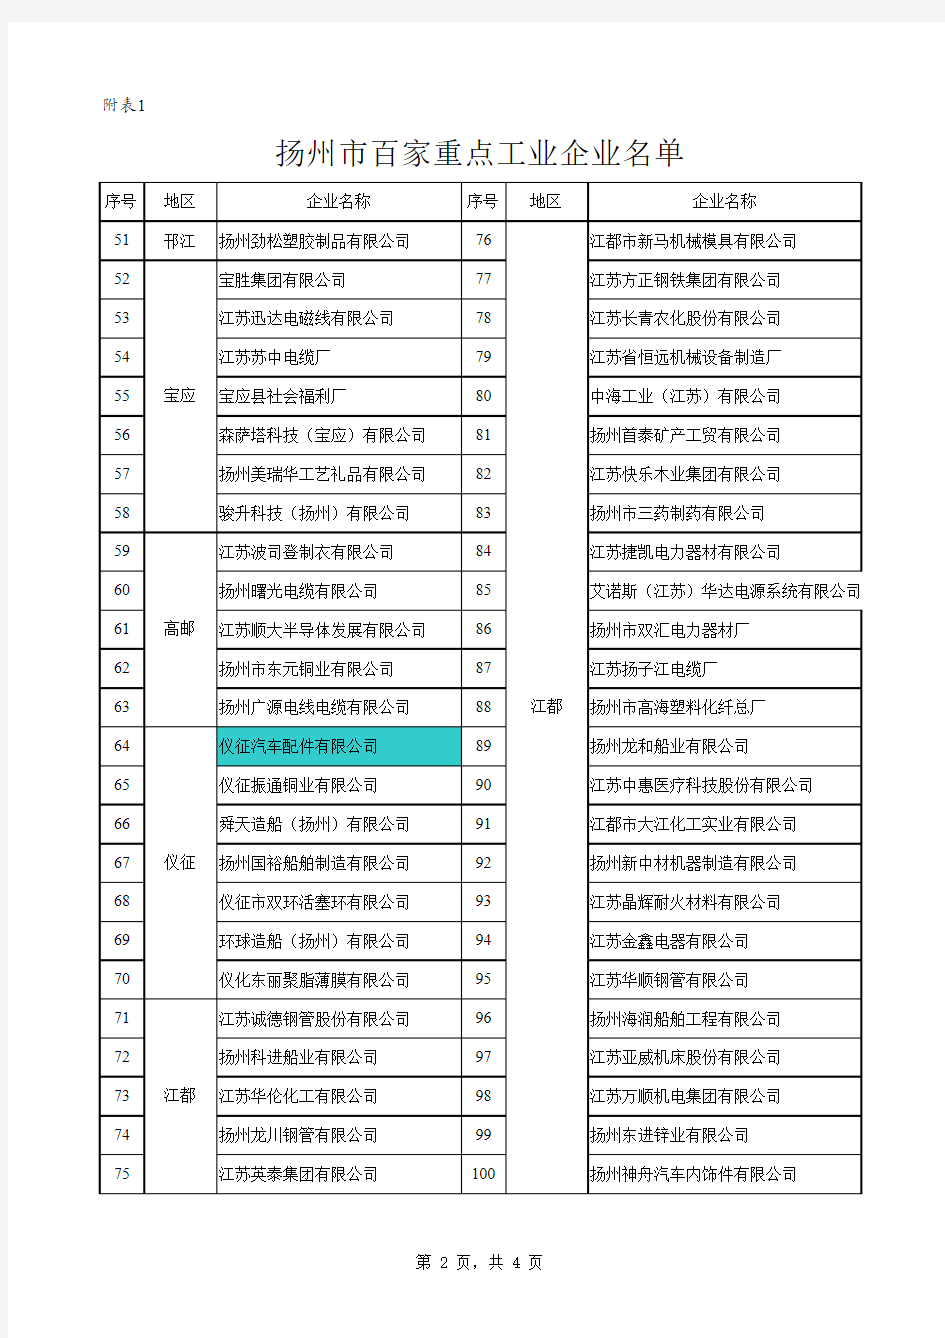 扬州百强企业名单